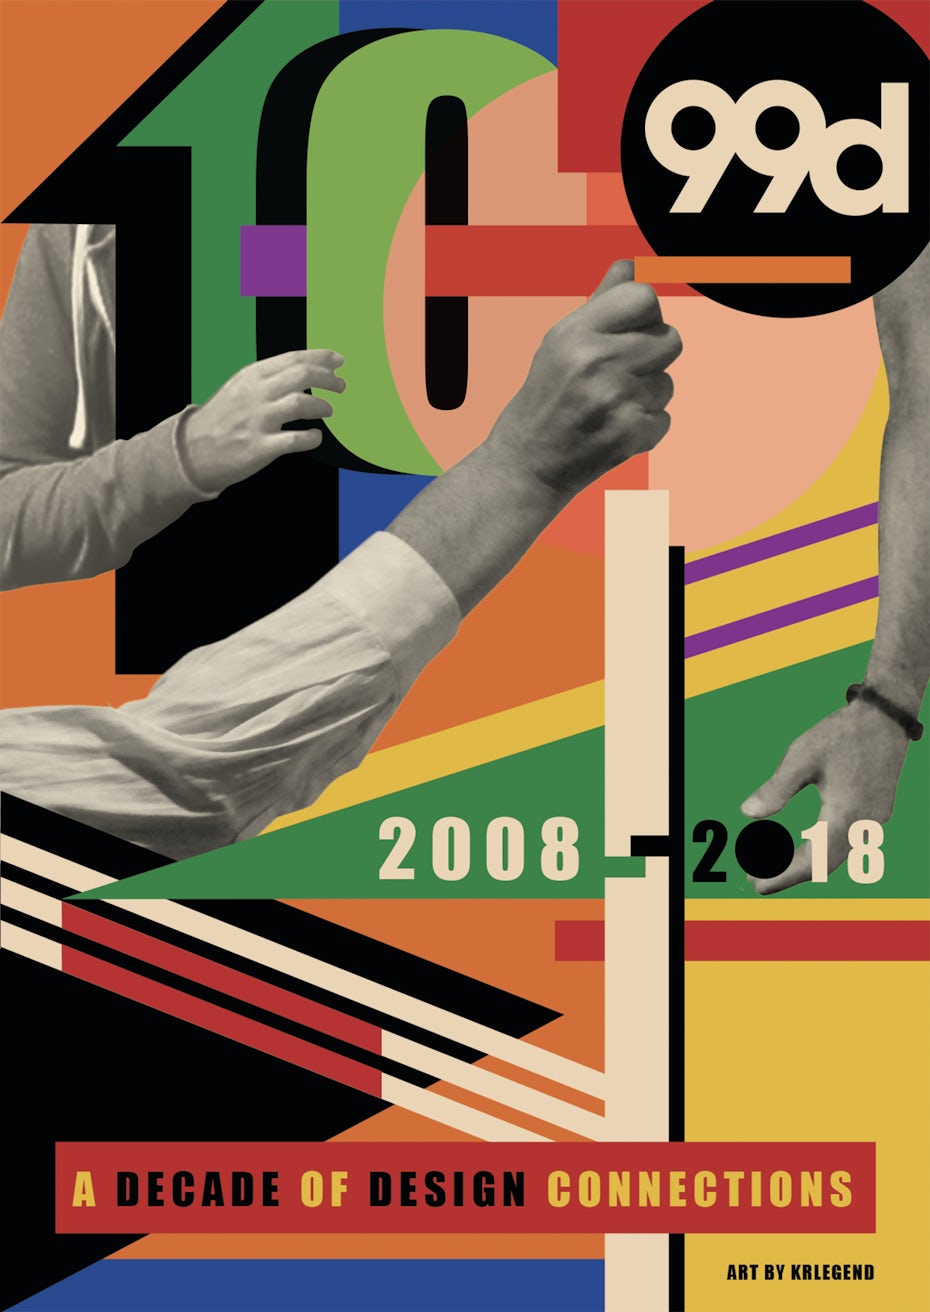 10 year anniversary poster design by krlegend